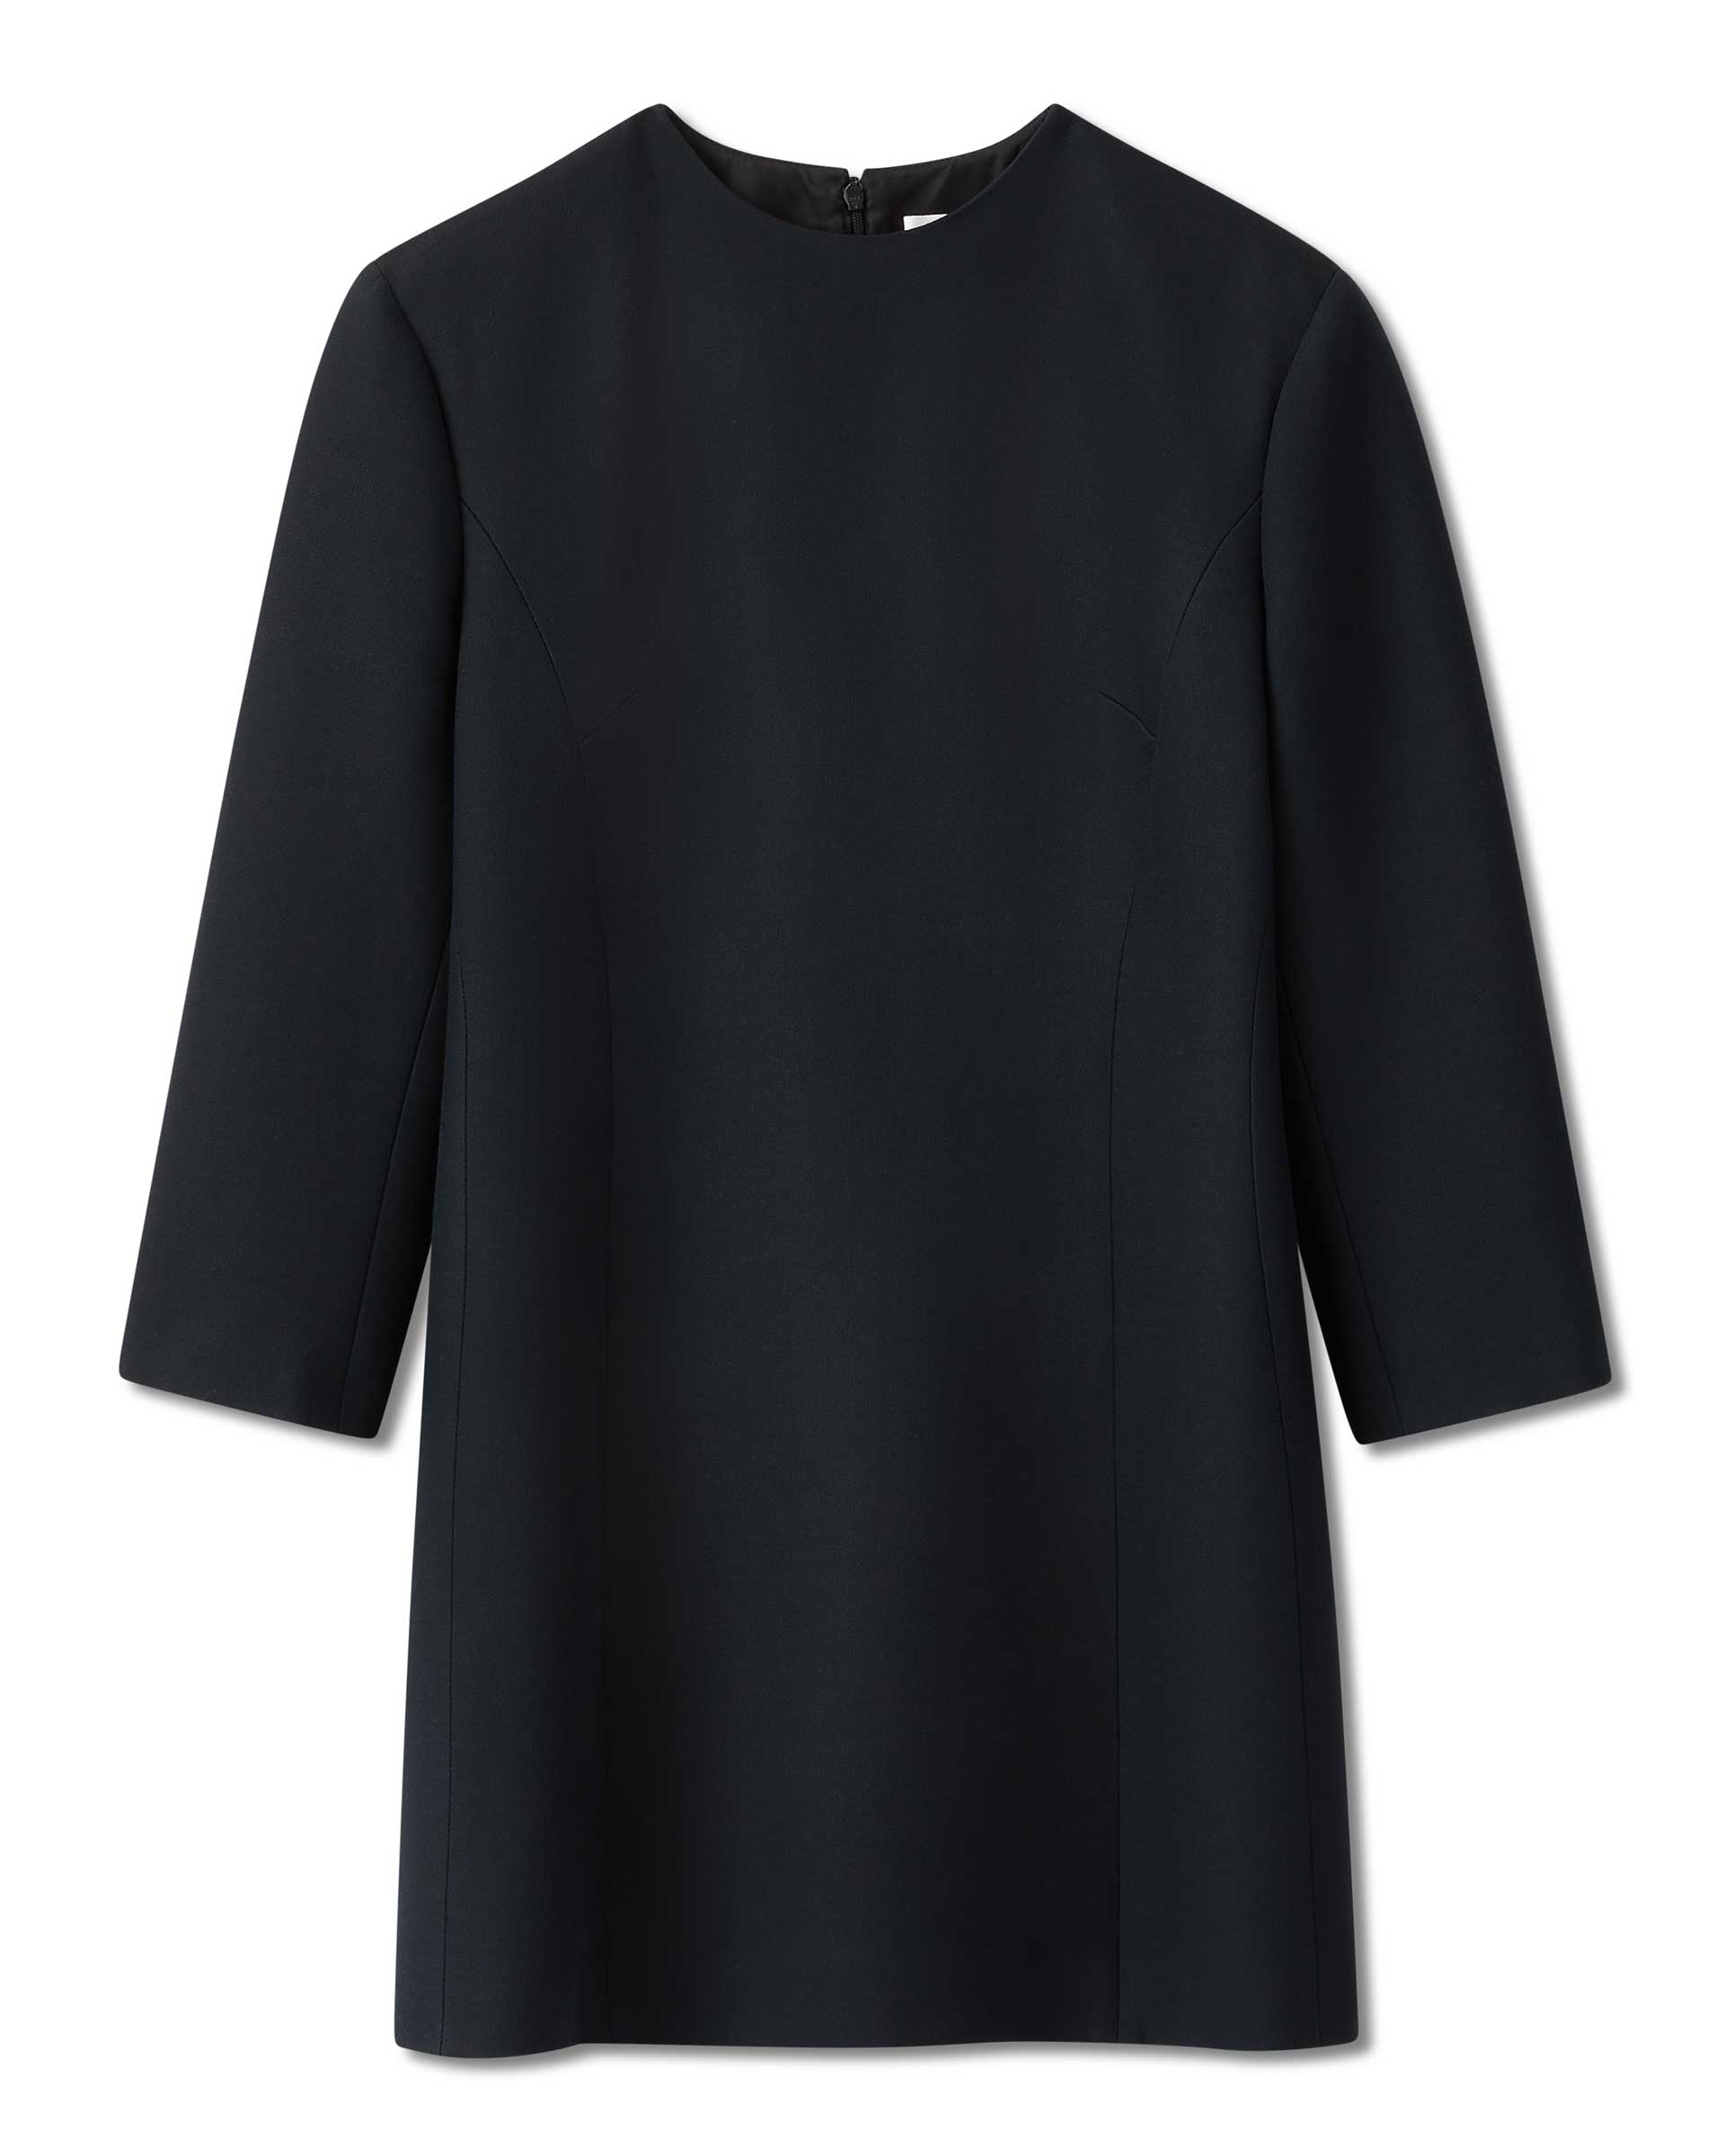 Dexter Dress in Wool Viscose, Black